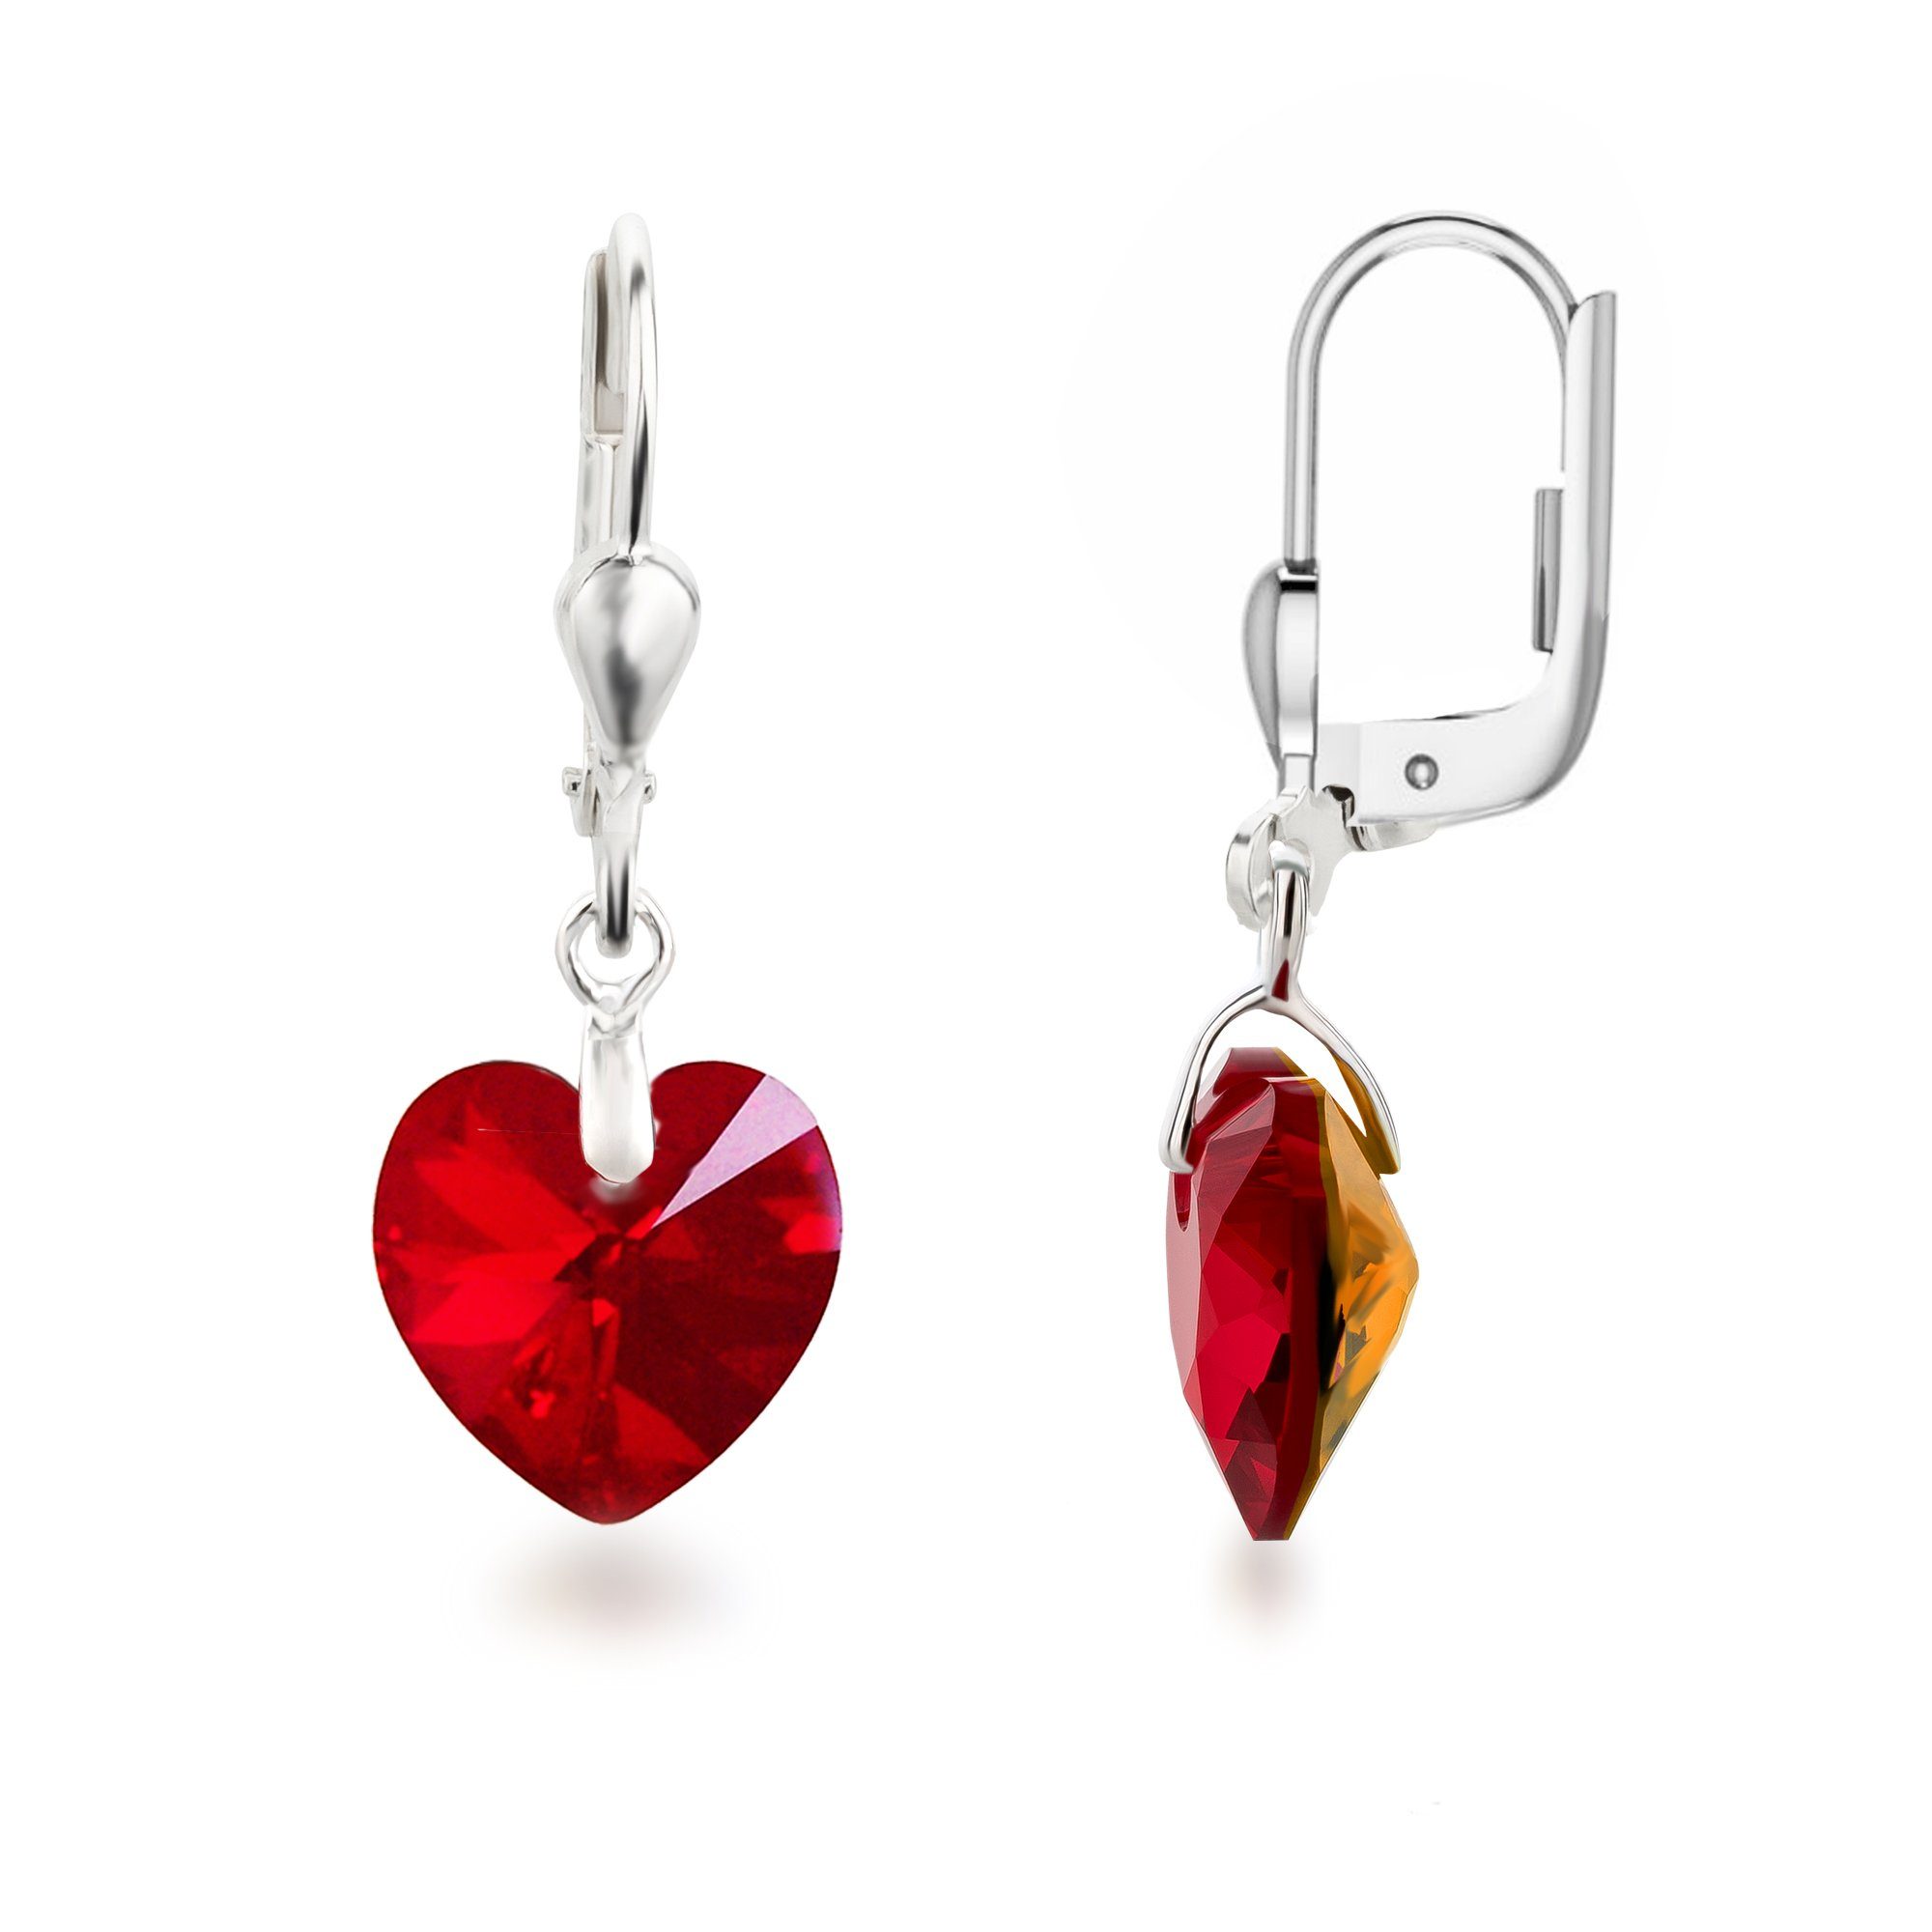 Schöner-SD Paar Ohrhänger Ohrringe hängend mit Herz Kristall 10mm für Damen und Mädchen, 925 Silber Siam-Rot